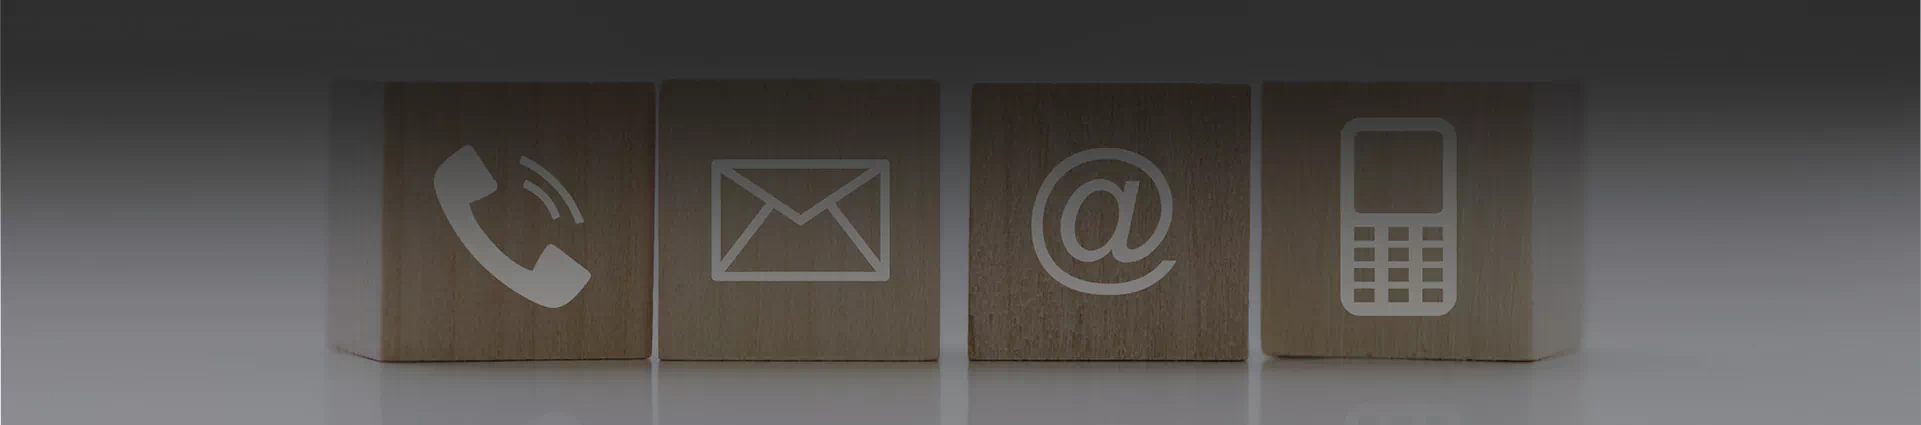 kostki z ikonami telefonu i maila